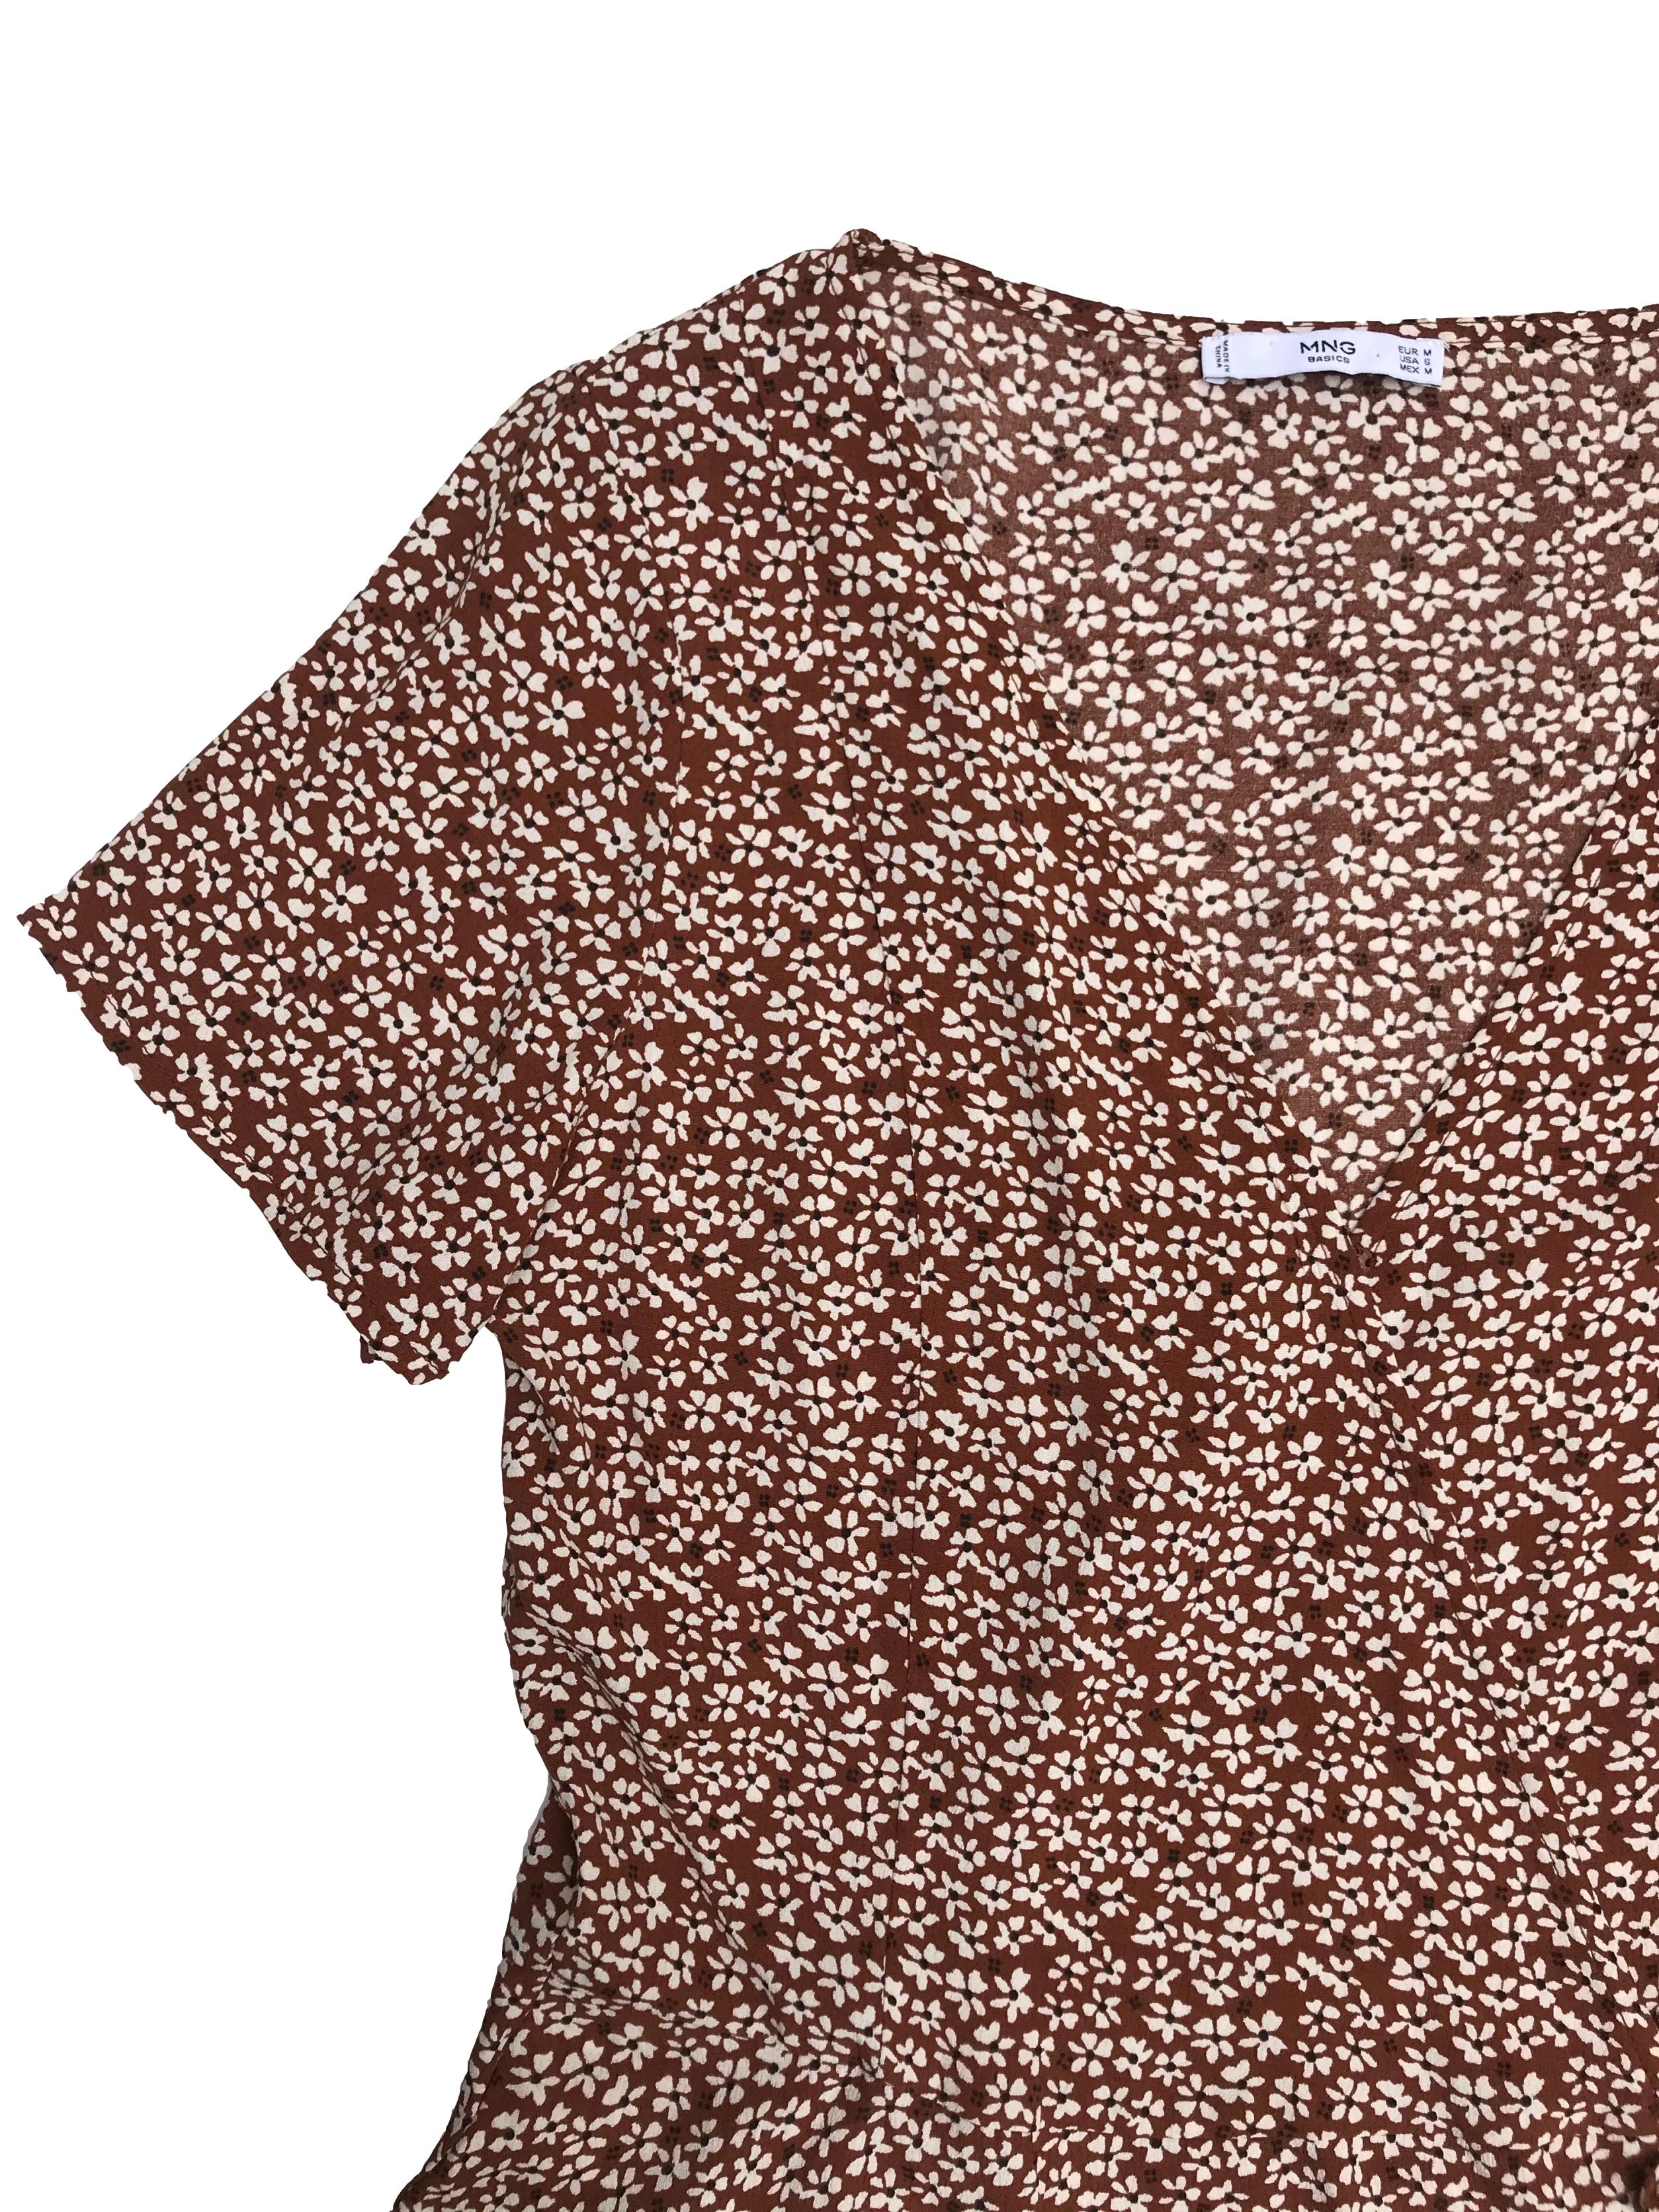 Blusa Mango tipo crepé marrón con florcitas, cruzada se amarra al lado. Precio original S/ 139